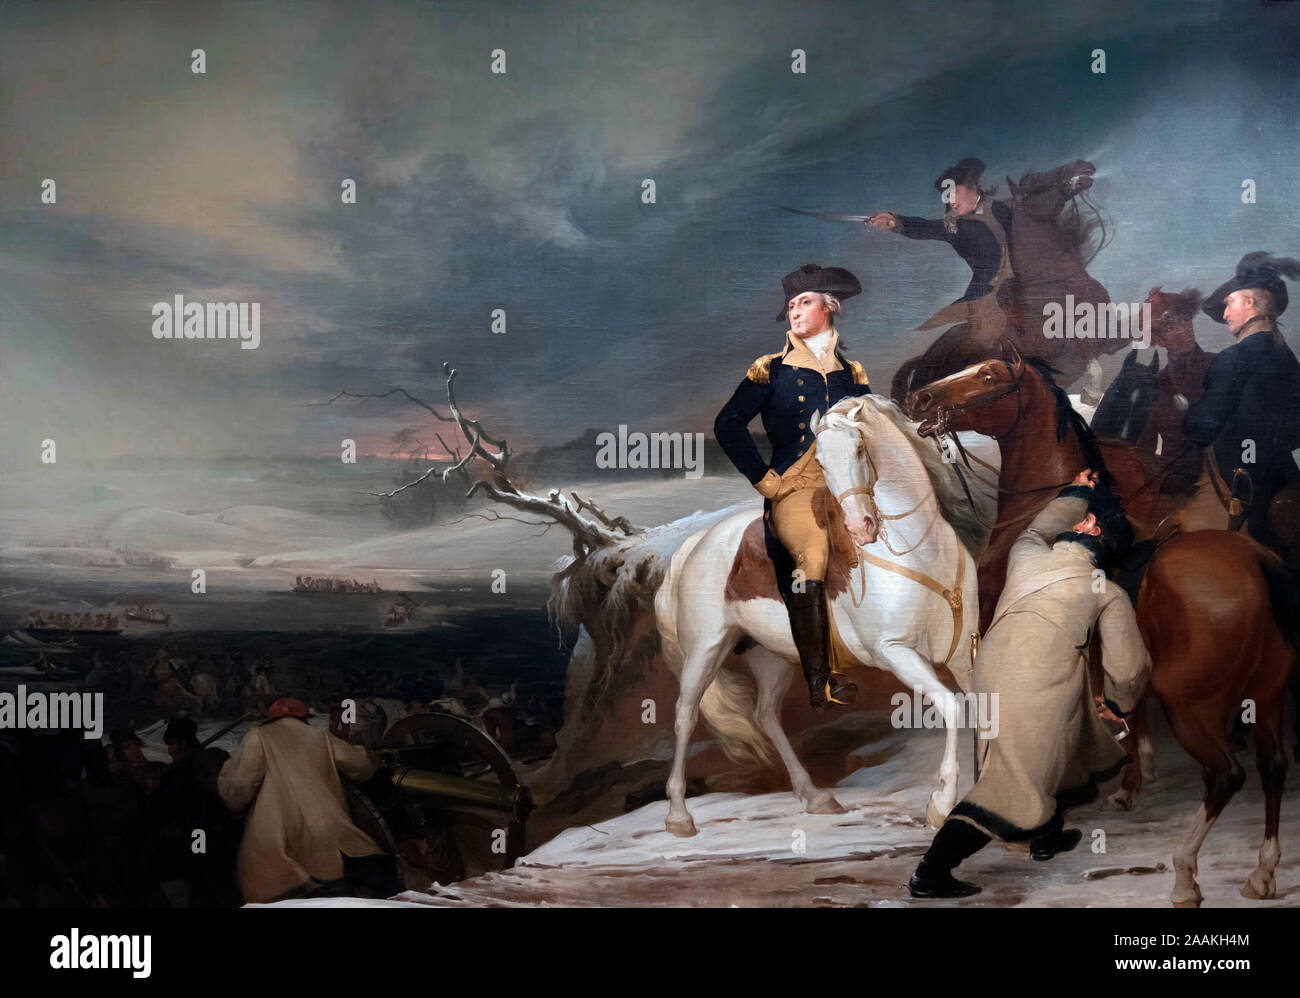 El pasaje del Delaware por Thomas Sully (1783-1872), óleo sobre lienzo, 1819. La pintura muestra el General George Washington mirando hacia su ejército tras haber cruzado el río Delaware durante la batalla de Trenton en diciembre de 1776. Foto de stock